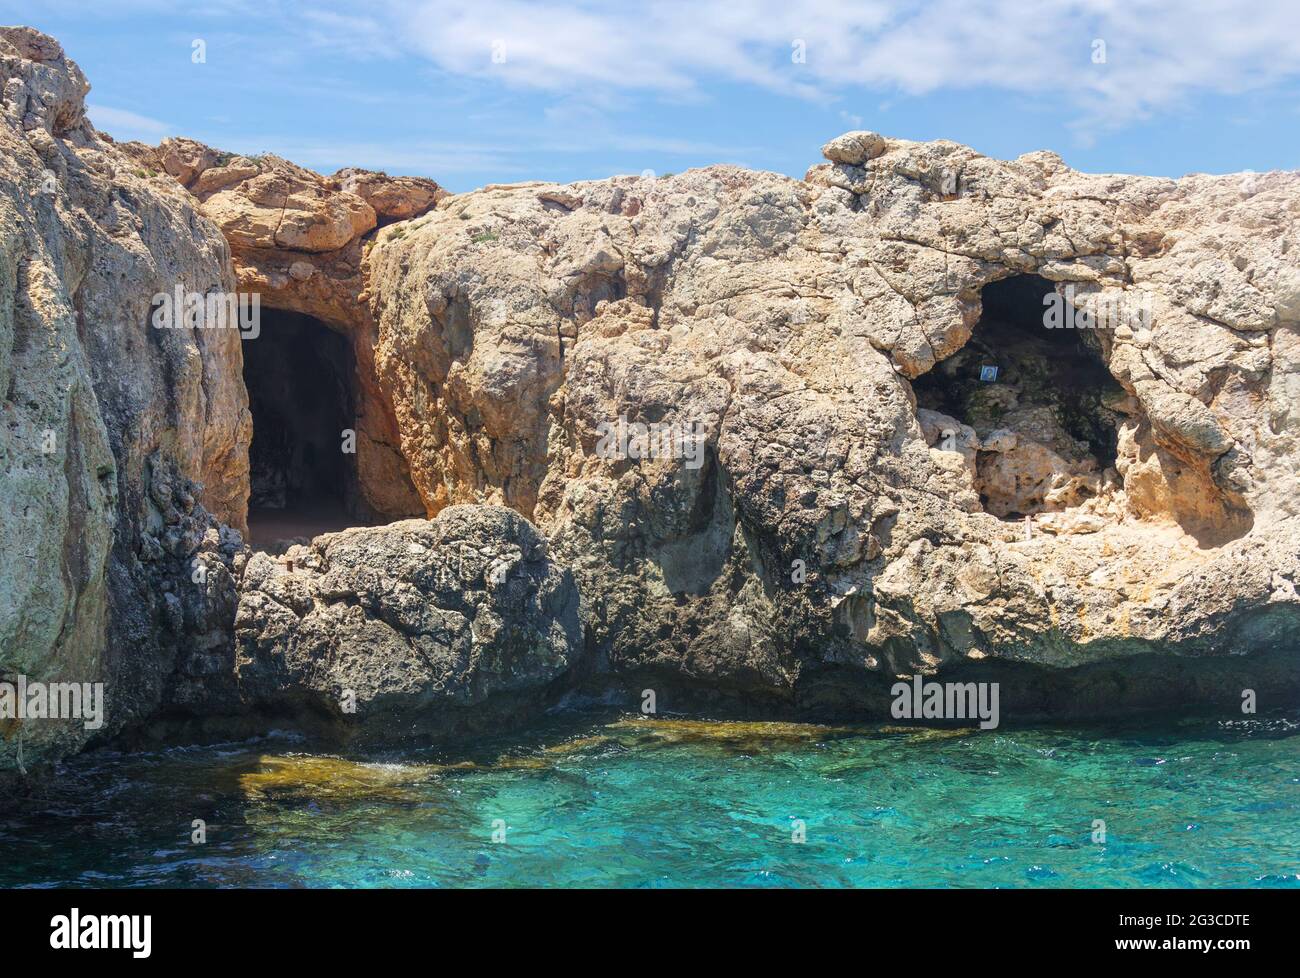 Piratenhöhlen, makelloses Wasser, türkisfarbenes Meer und Felsen in der Nähe von Protaras. Zypern. Stockfoto